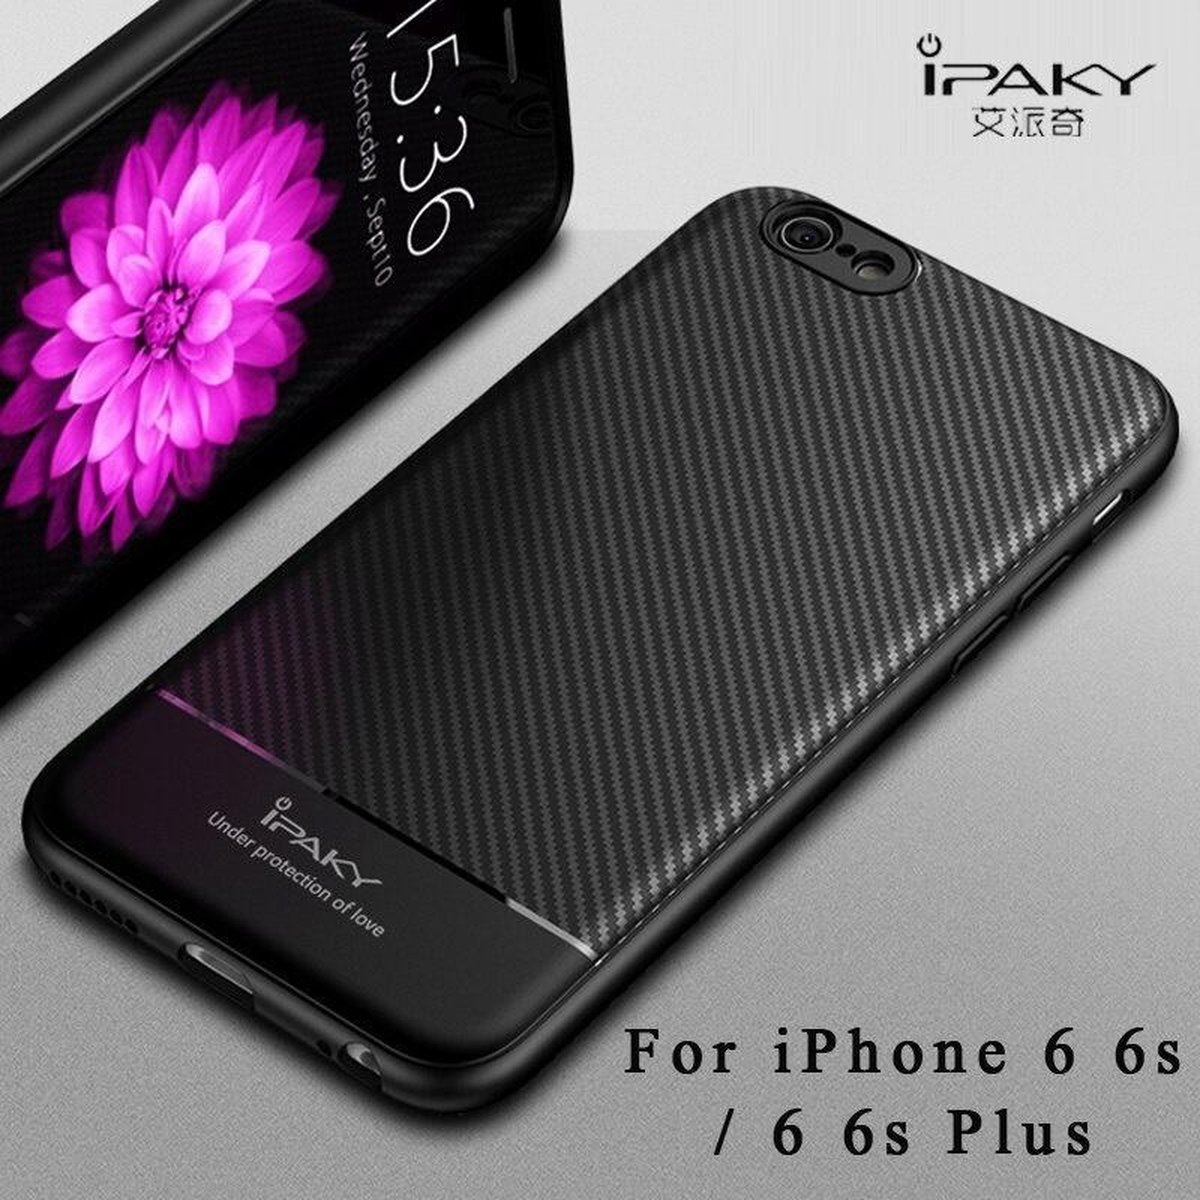 Rubberen case Ipaky iphone 6(s) zwart